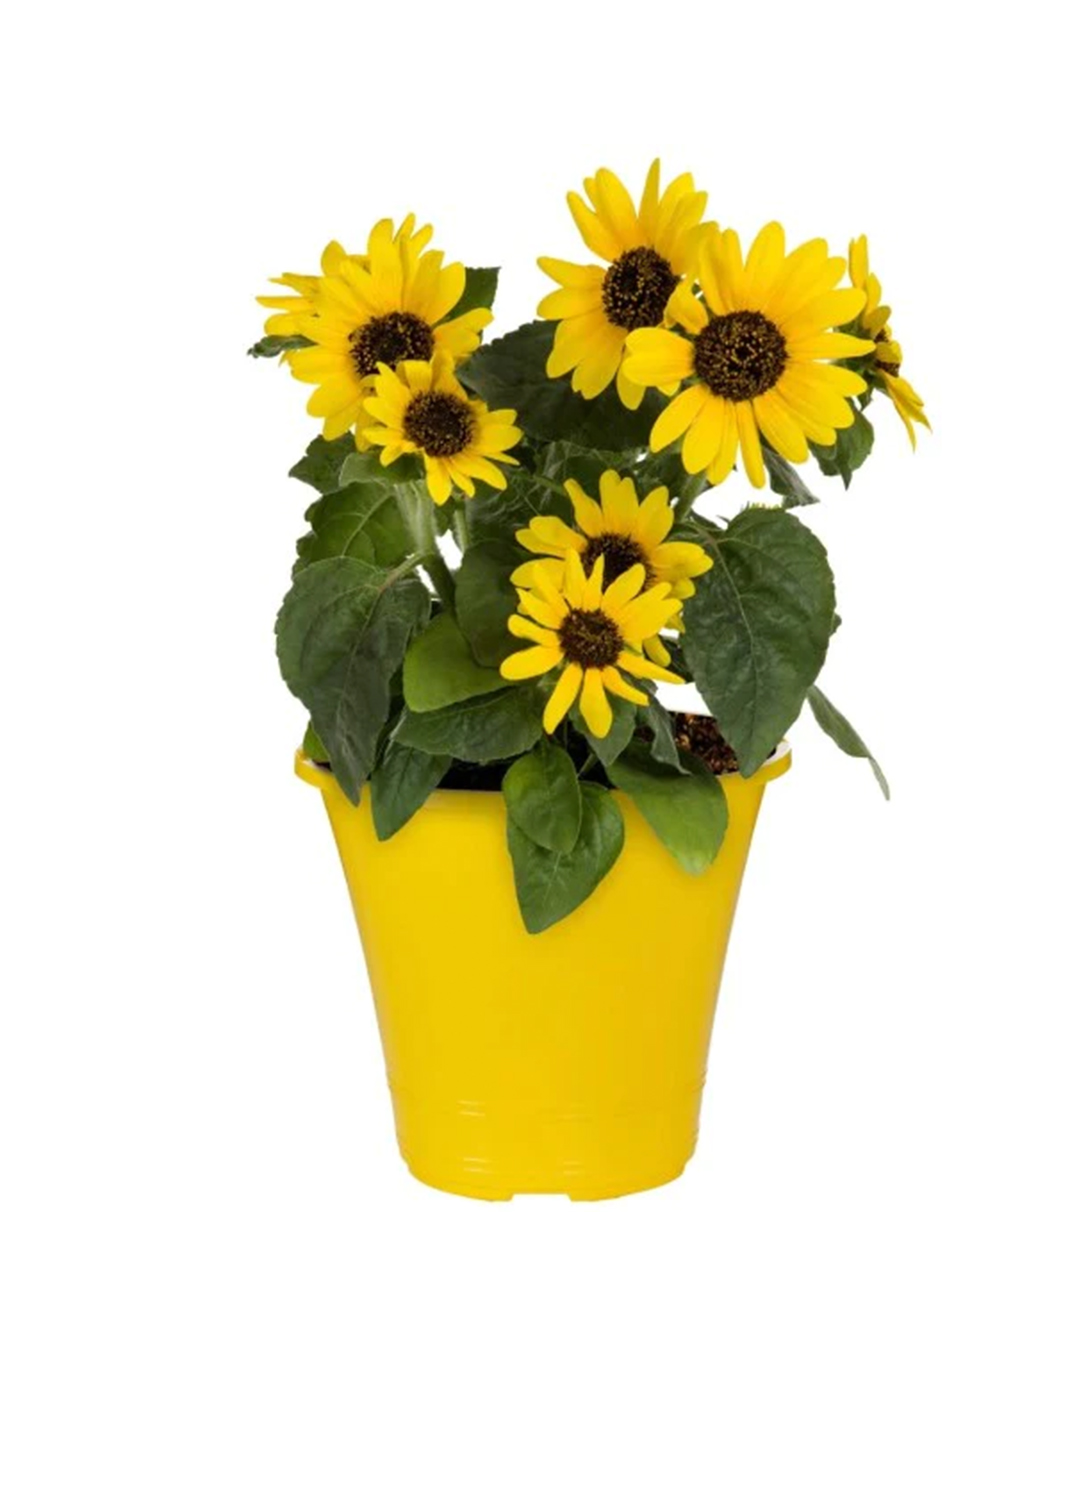 Ornamental Sunflower, Helianthus Annuus